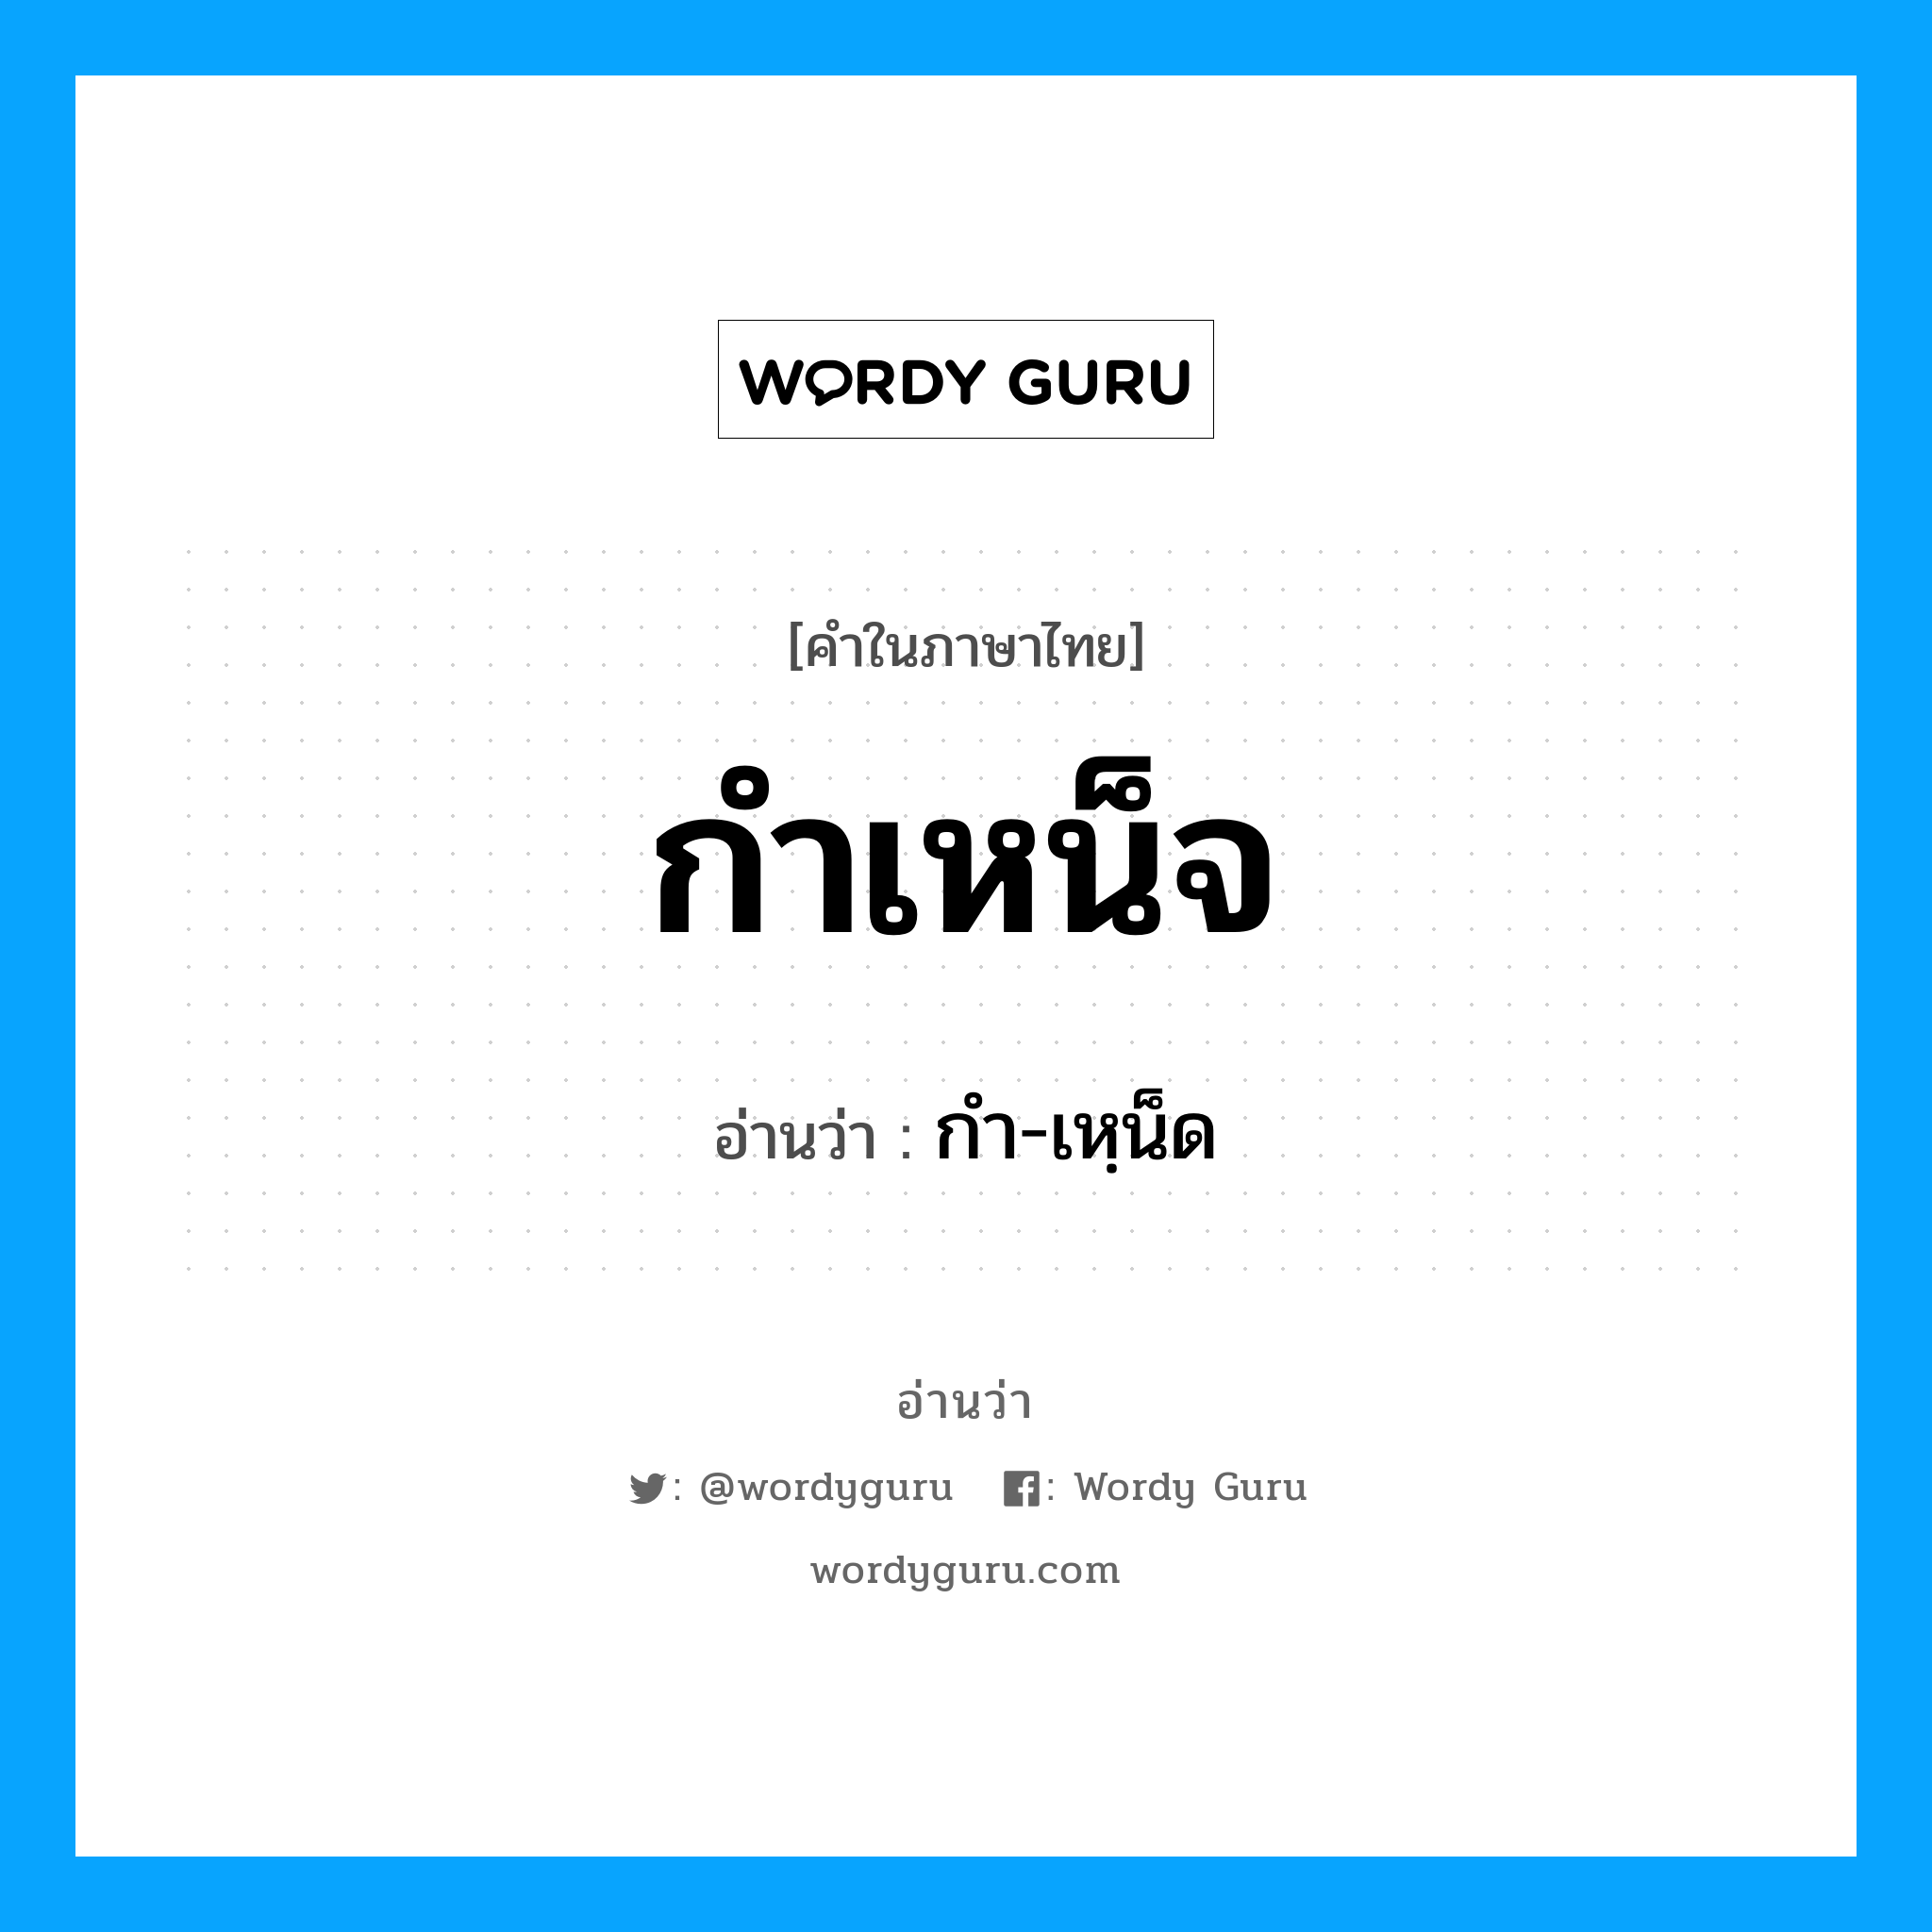 กำ-เหฺน็ด เป็นคำอ่านของคำไหน?, คำในภาษาไทย กำ-เหฺน็ด อ่านว่า กำเหน็จ